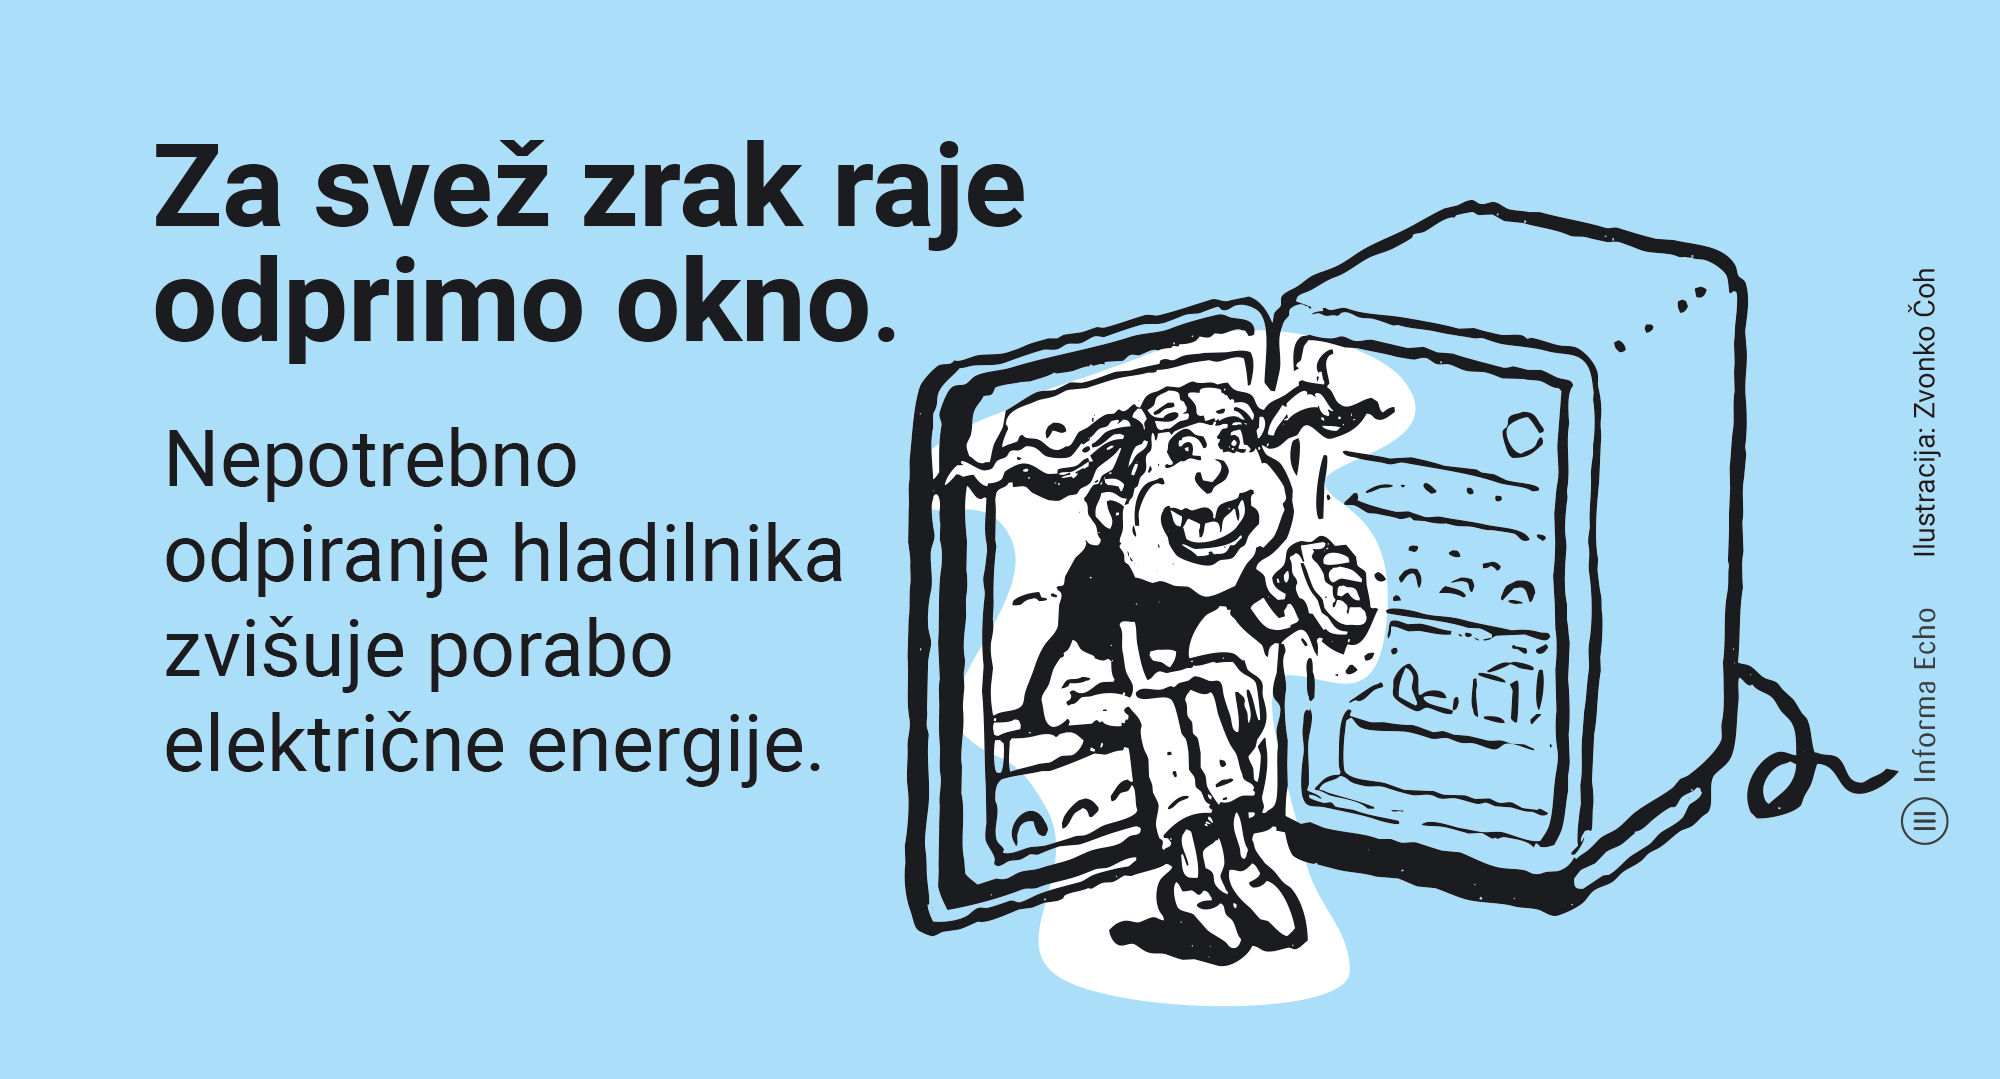 Optimalna temperatura v hladilniku je približno 5 °C / Ilustracija: Zvonko Čoh